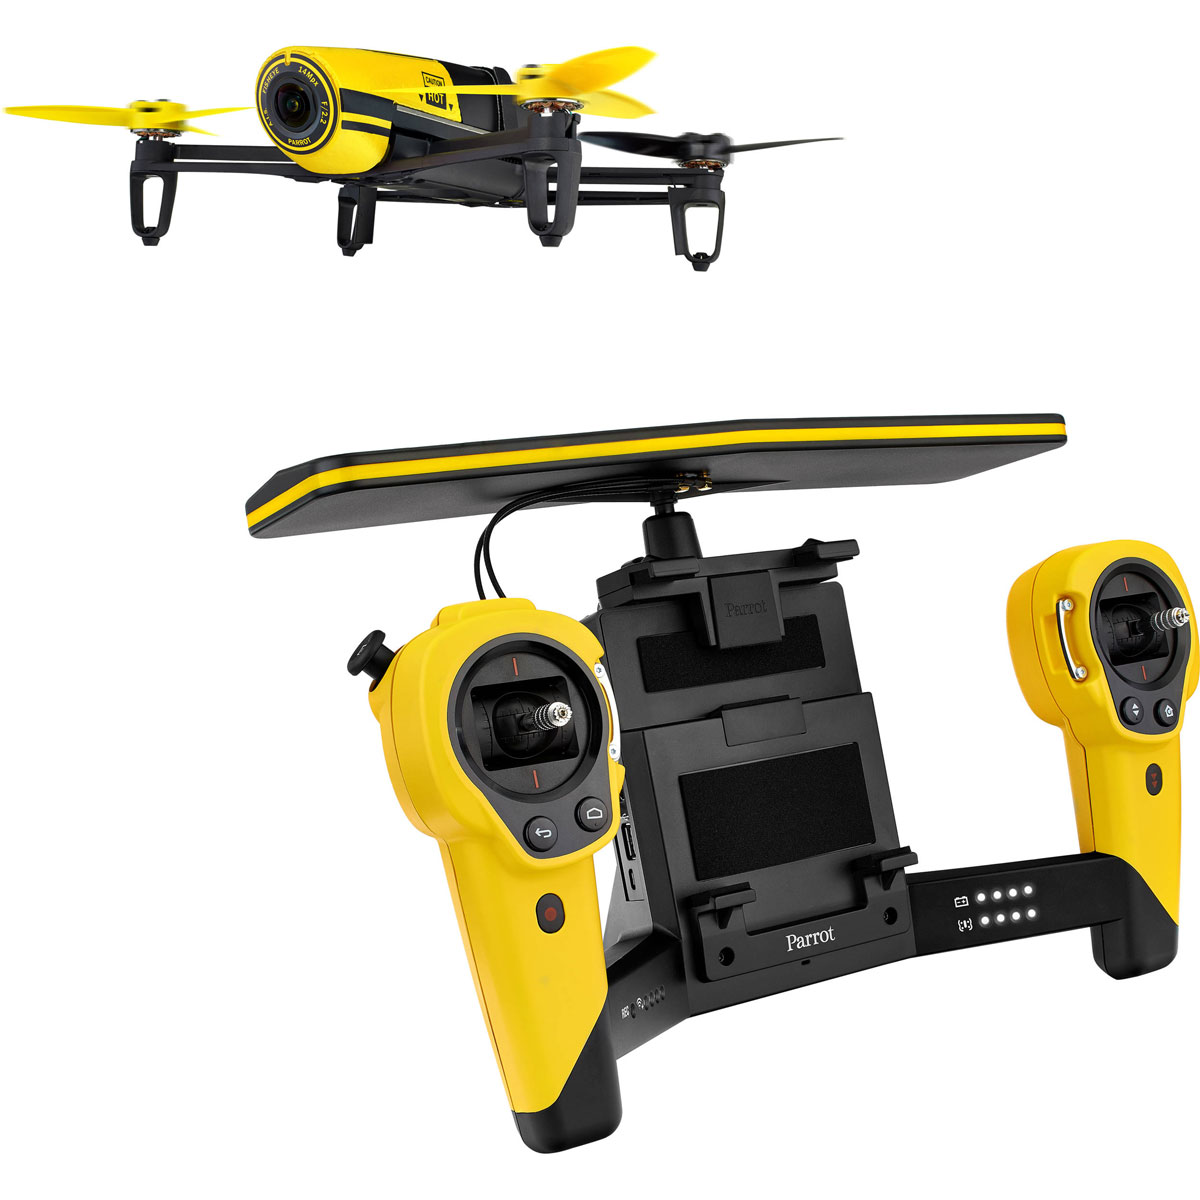 Parrot Квадрокоптер на радиоуправлении Bebop Drone + Skycontroller цвет желтый